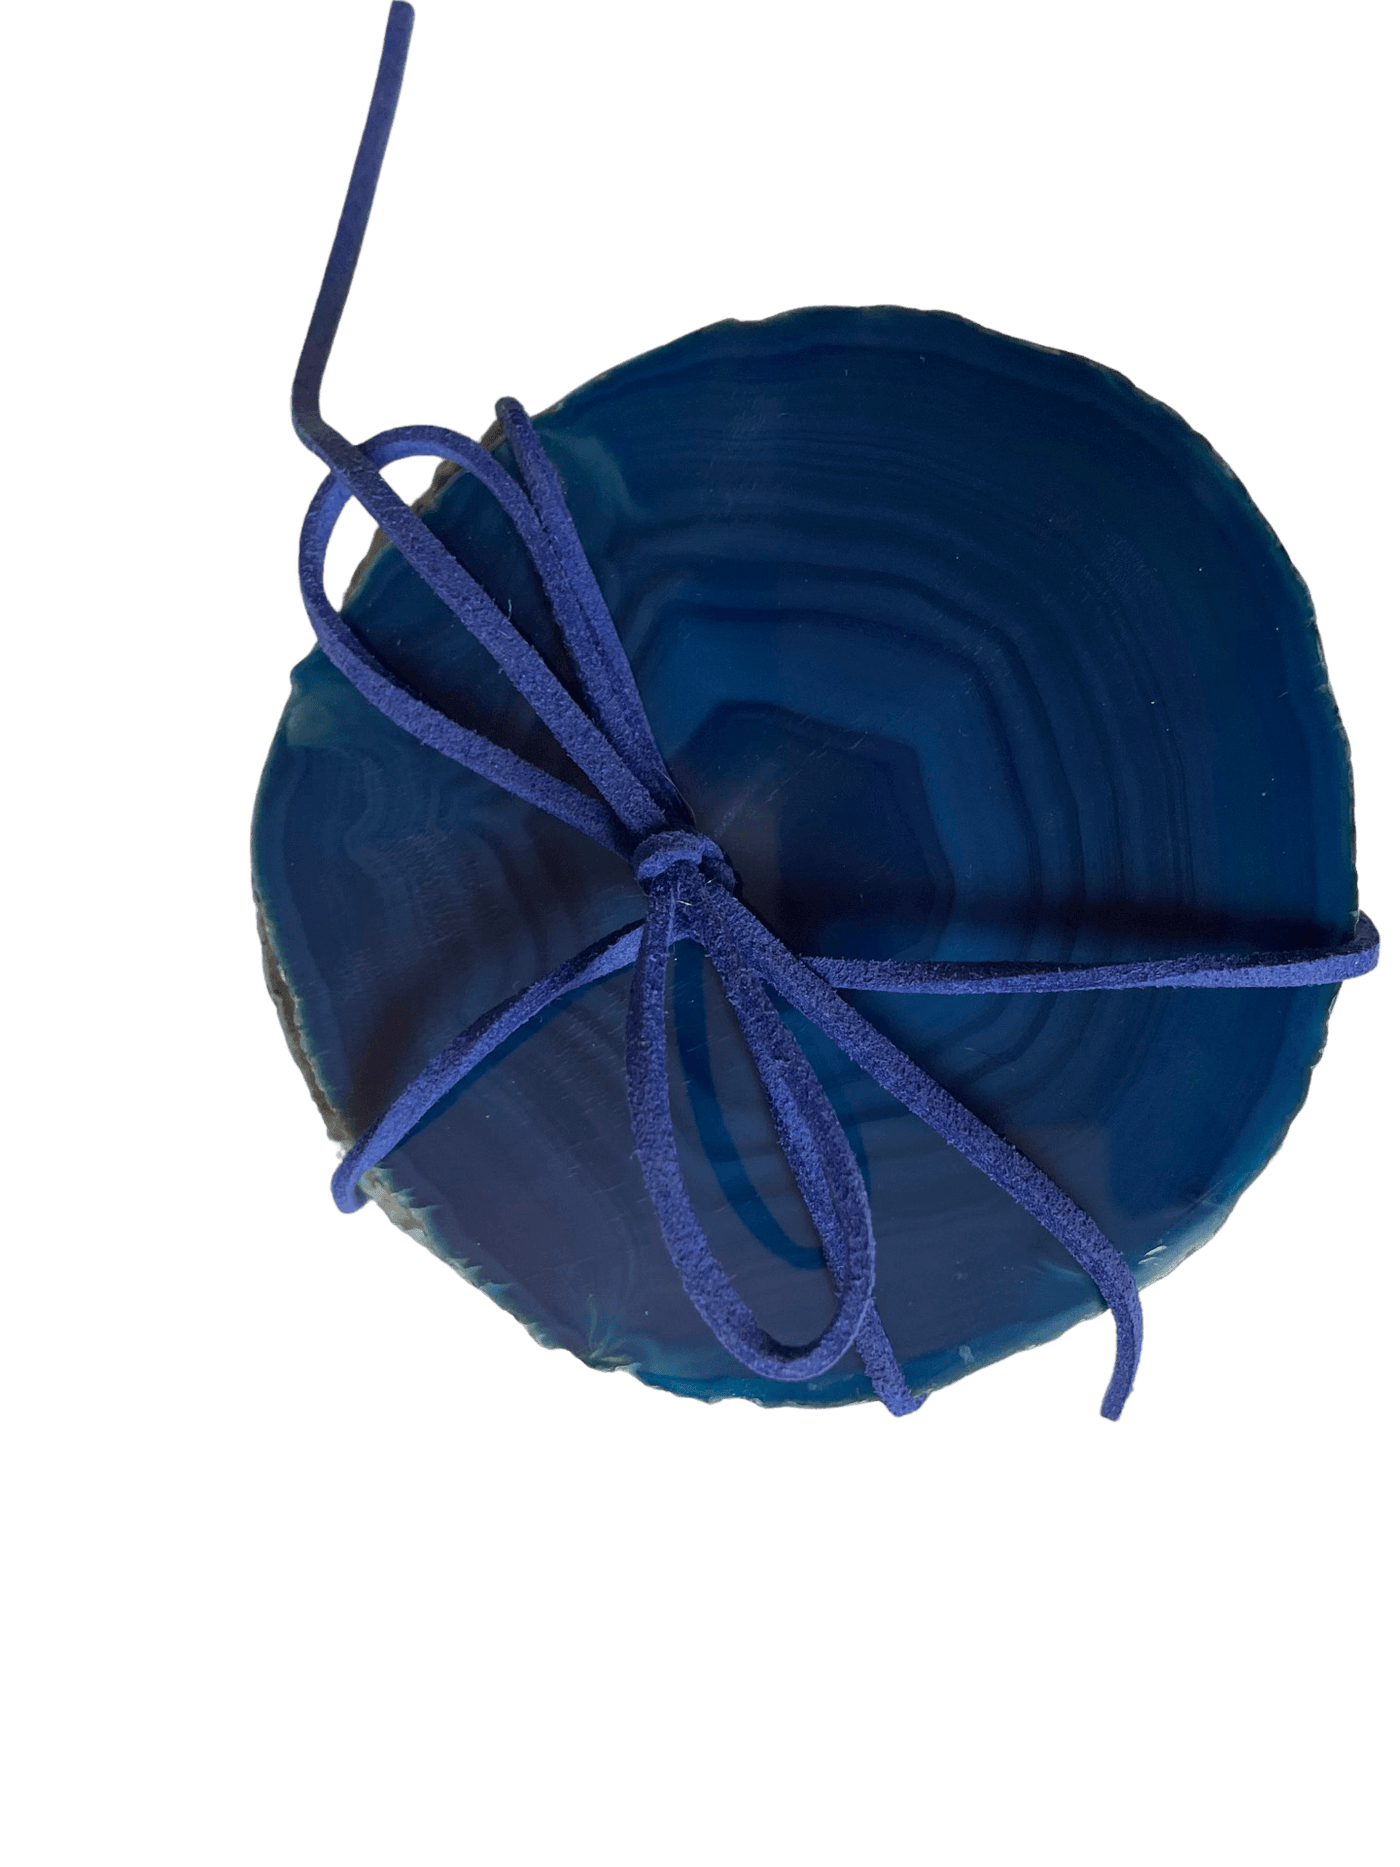 Home Jewels Untersetzer aus Achat je 4 Stück im Set, wahlweise in Brauntönen oder eingefärbt in Blau/Grün/Pink/Lila/Türkis, Durchmesser liegt zwischen ca. 8 & 11 cm - Bitangel RENOVATE & FURNISH HOMES GmbH